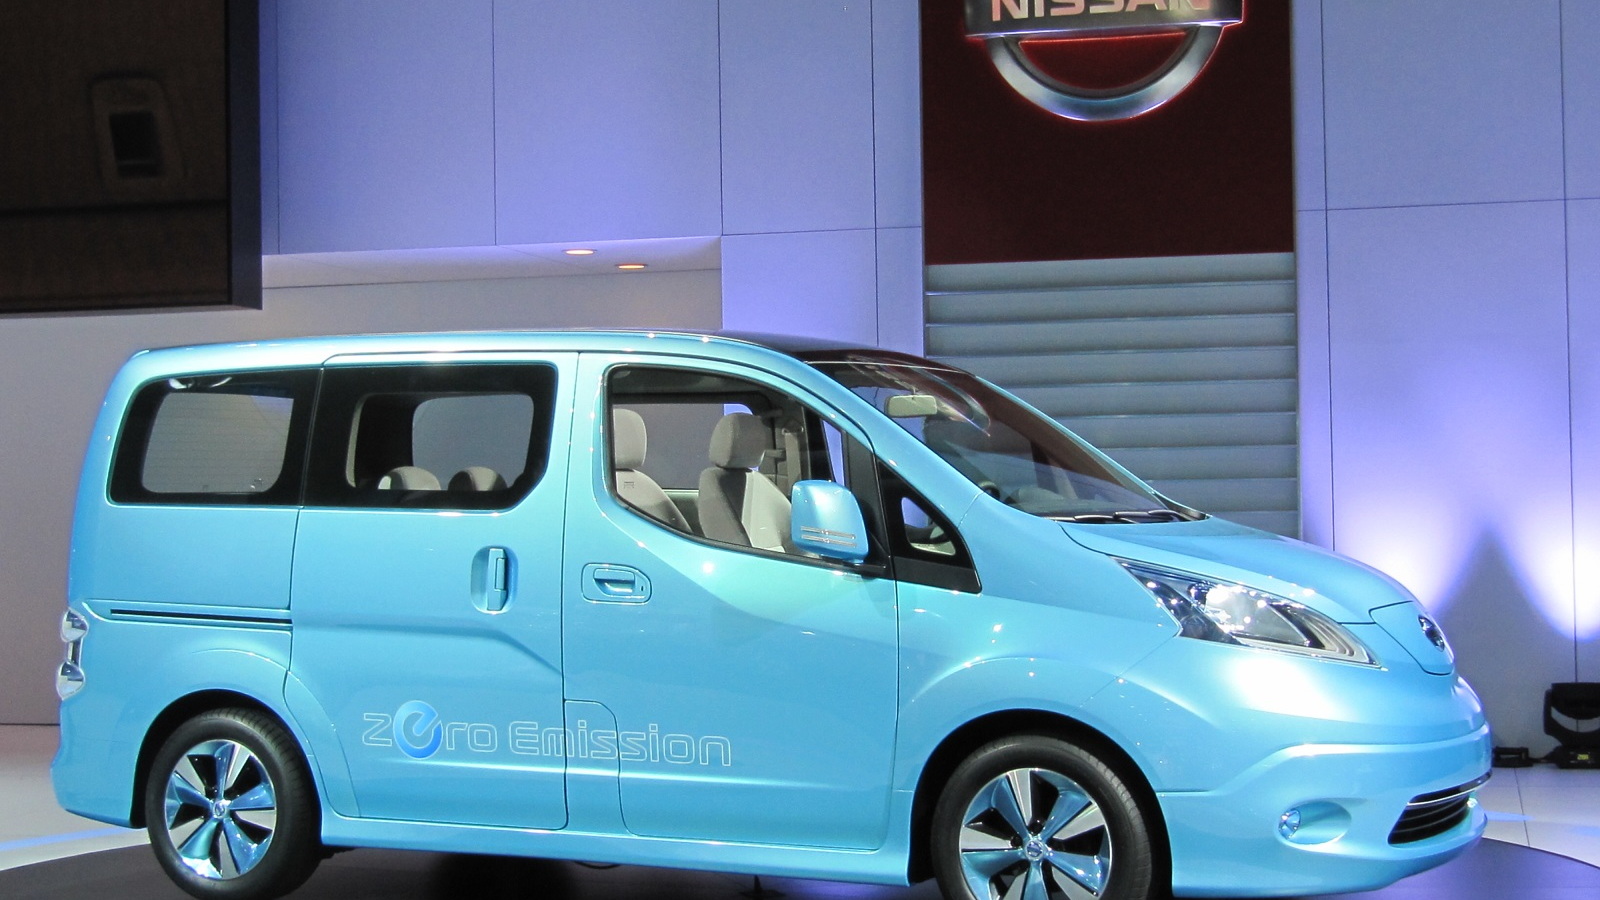 Nissan e-NV 200 Concept electric minivan, 2012 Detroit Auto Show